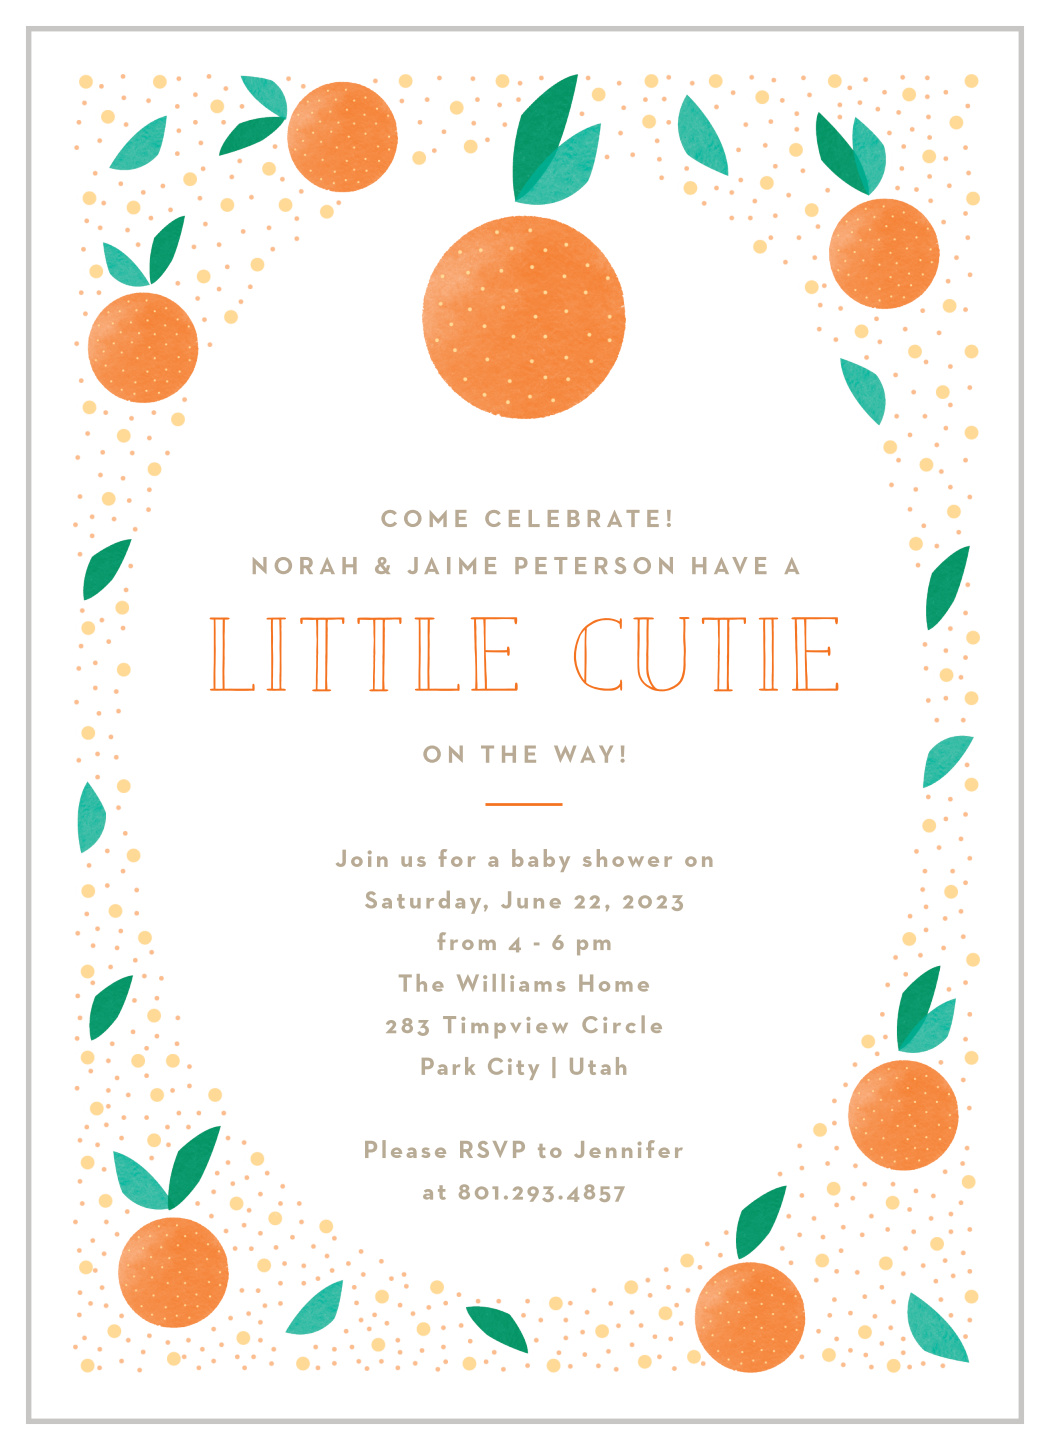 Little Cutie Baby Shower Invitation Gender neutral Baby Shower Invitation Virtual Baby Shower Invitation Cutie on the way